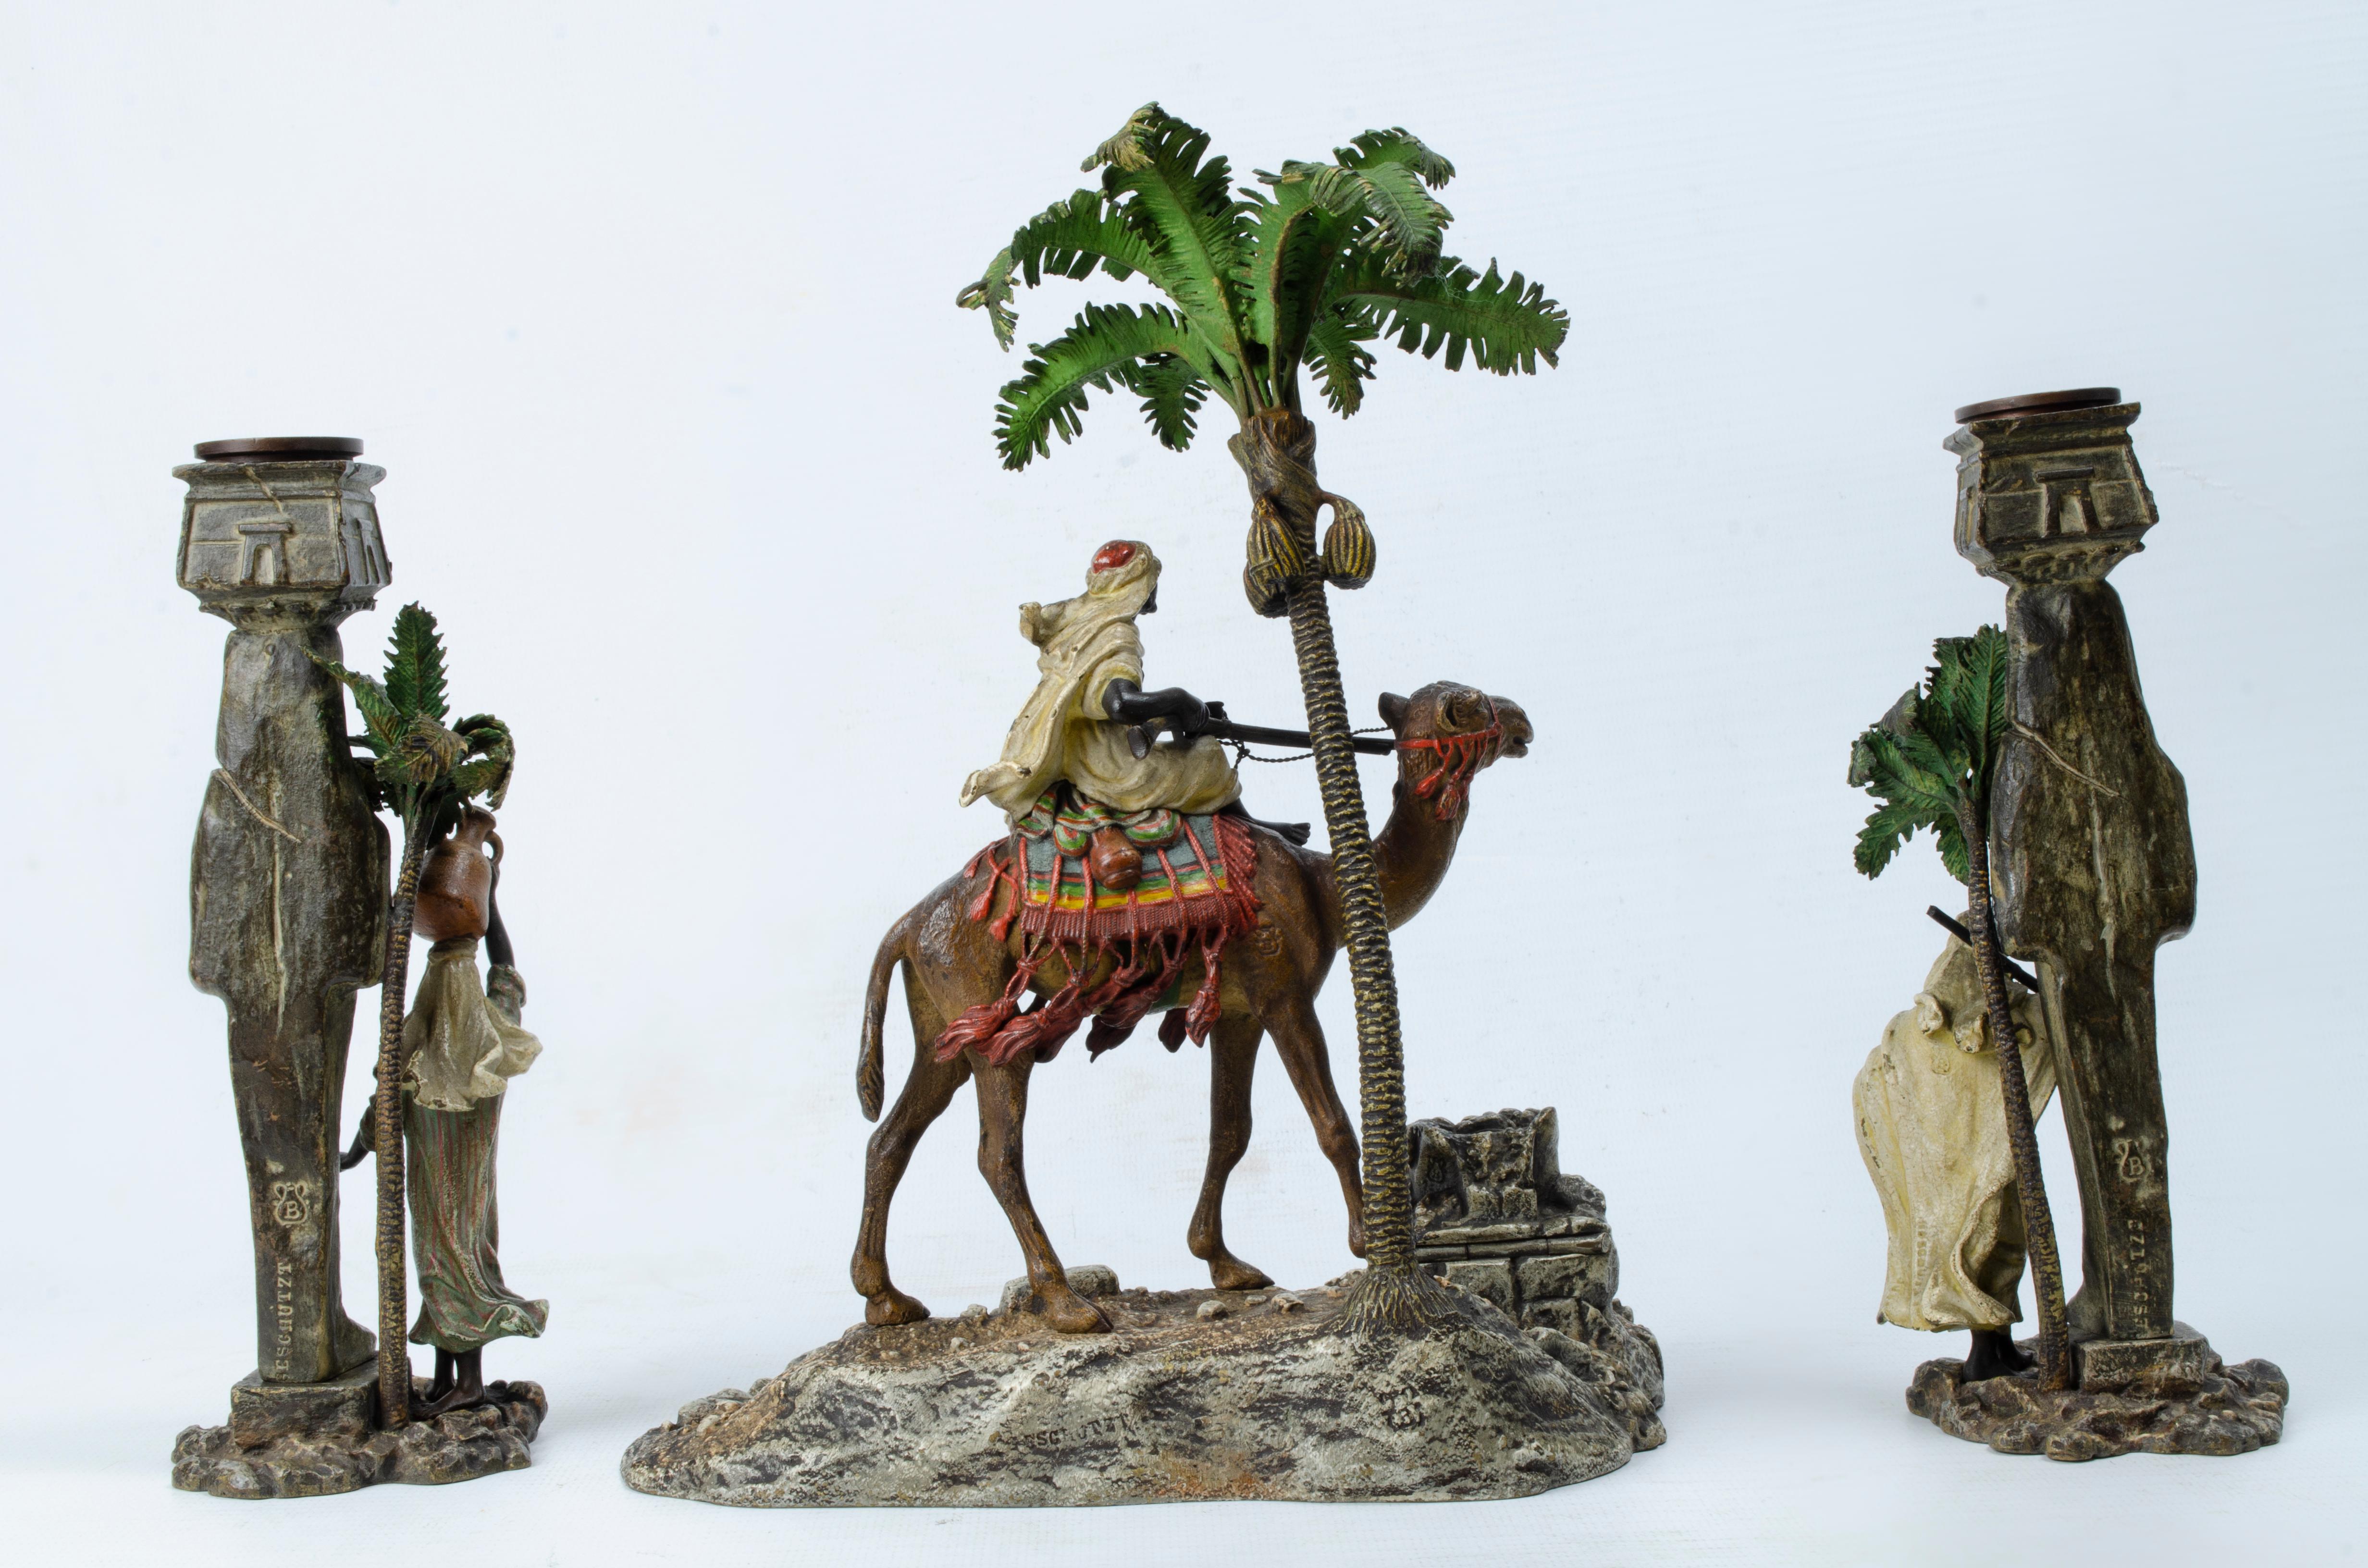 Arabische Themengarnitur von Franz Xavier Bergman (1861-1936). Die Stücke sind aus polychromer Bronze gefertigt. Im Mittelpunkt stehen ein Tintenfass, das zwischen den Felsen versteckt ist, und ein arabischer Krieger, der auf einem Kamel neben einer